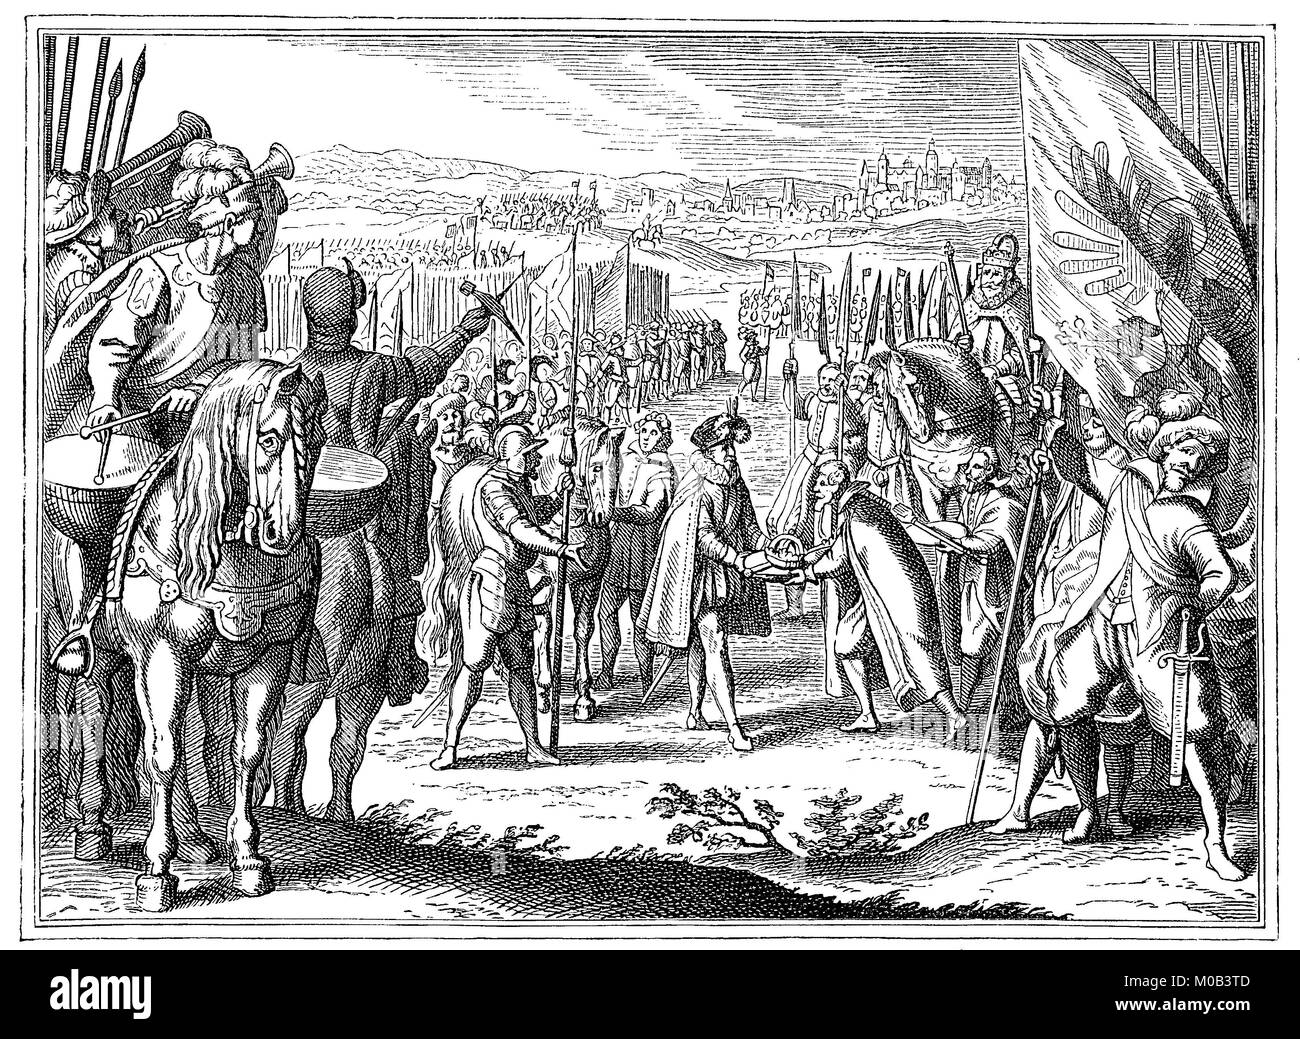 Transfert de la couronne de Hongrie à Matthias en 1608, 1557 - 1619, Matthia, était Saint Empereur Romain de 1612, roi de Hongrie et de Croatie à partir de 1608 et roi de Bohême à partir de 1611, l'amélioration numérique reproduction d'une estampe originale de 1880 Banque D'Images